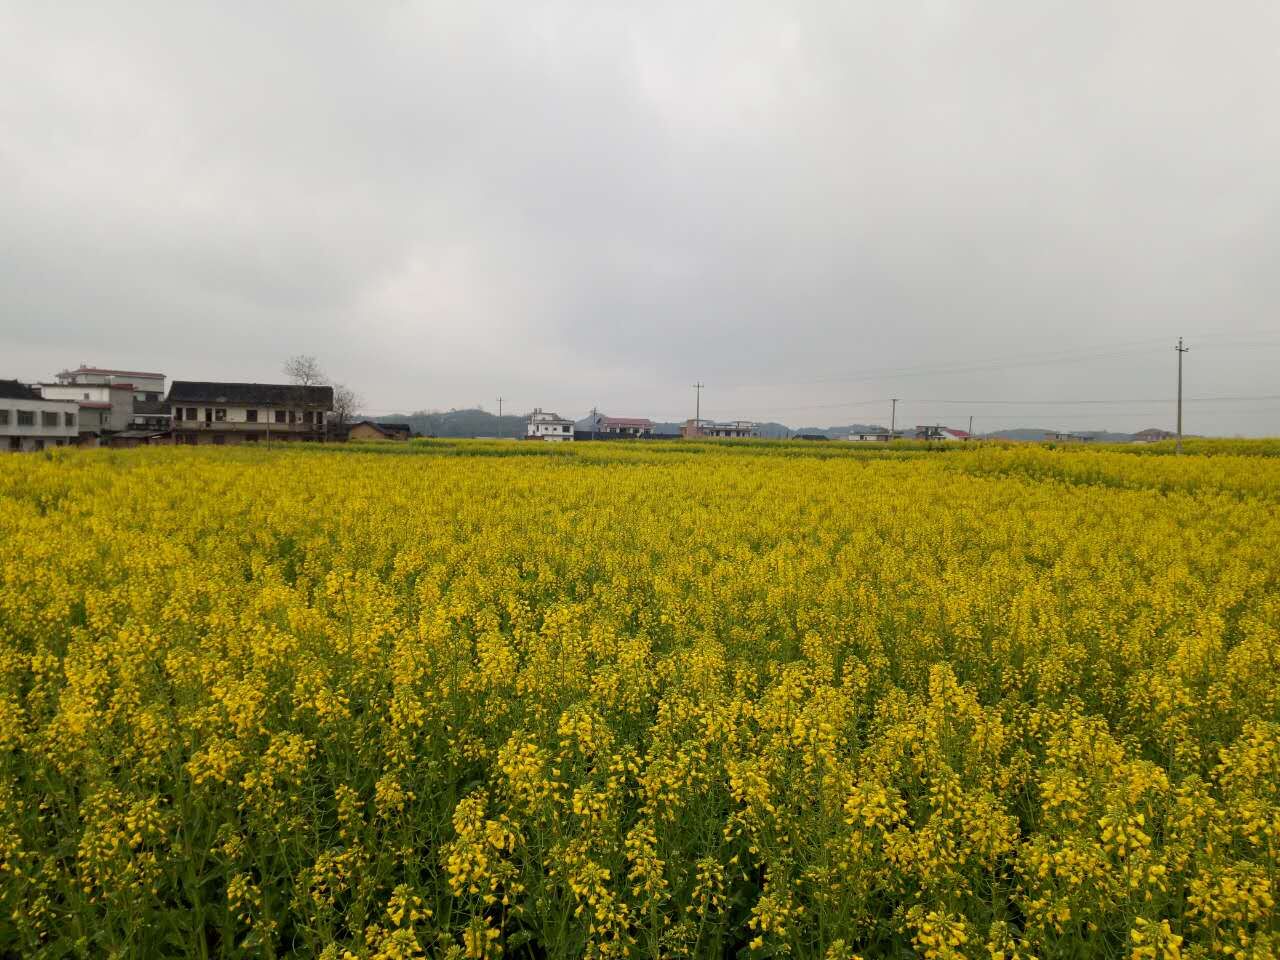 近期,湖南娄底市双峰县锁石镇万亩油菜基地的油菜花相继绽放,绵延